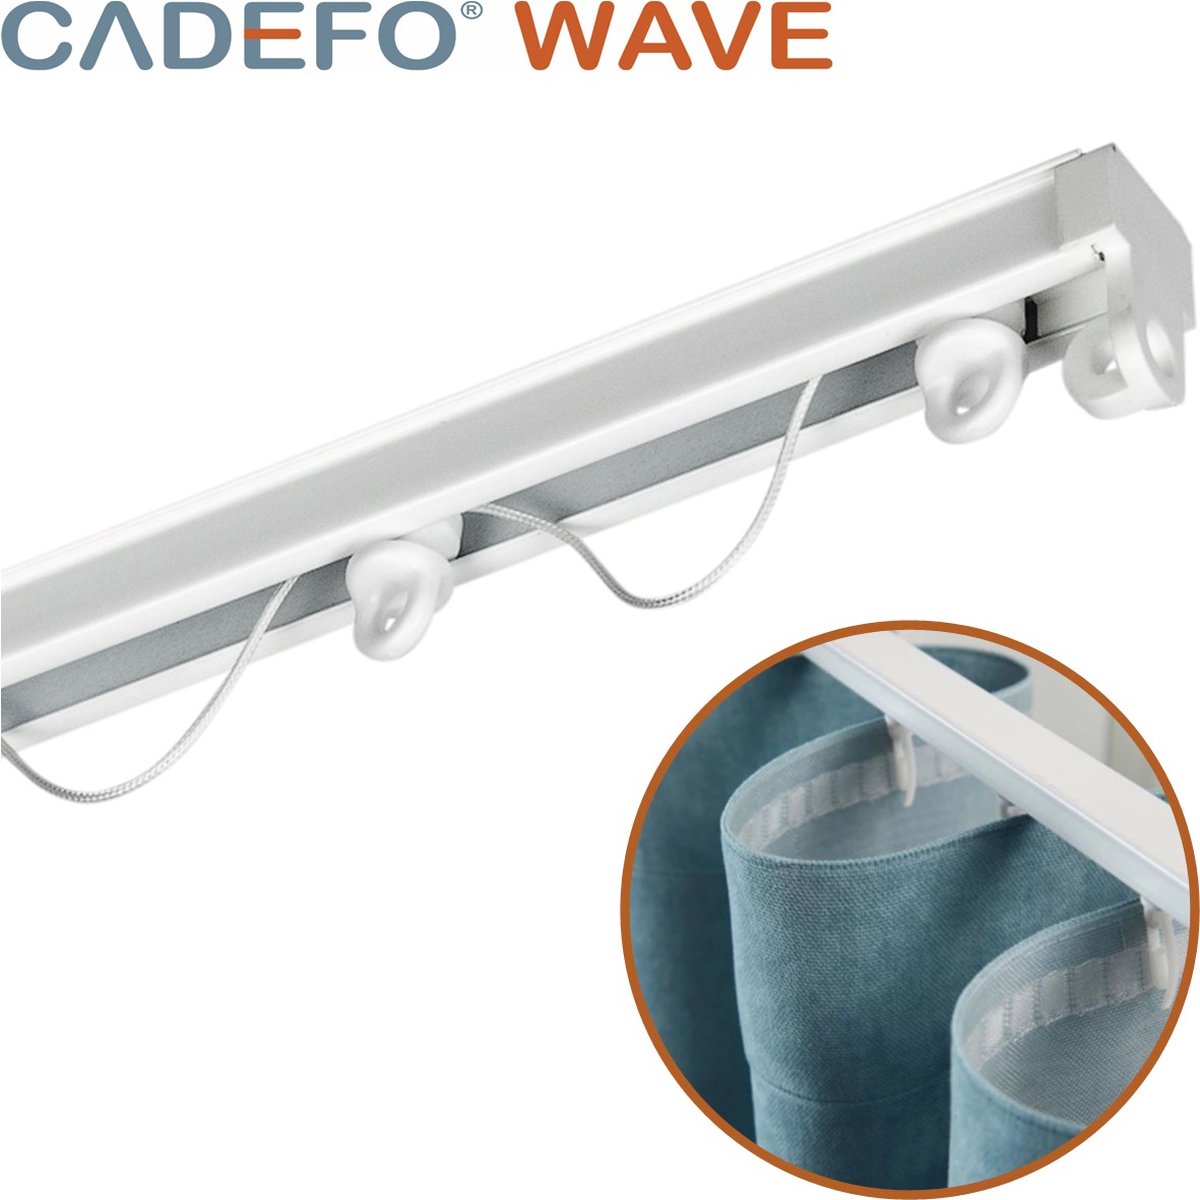 CADEFO WAVE (301 - 350 cm) Gordijnrails - Compleet op maat! - UIT 1 STUK - Leverbaar tot 6 meter - Plafondbevestiging - Lengte 318 cm